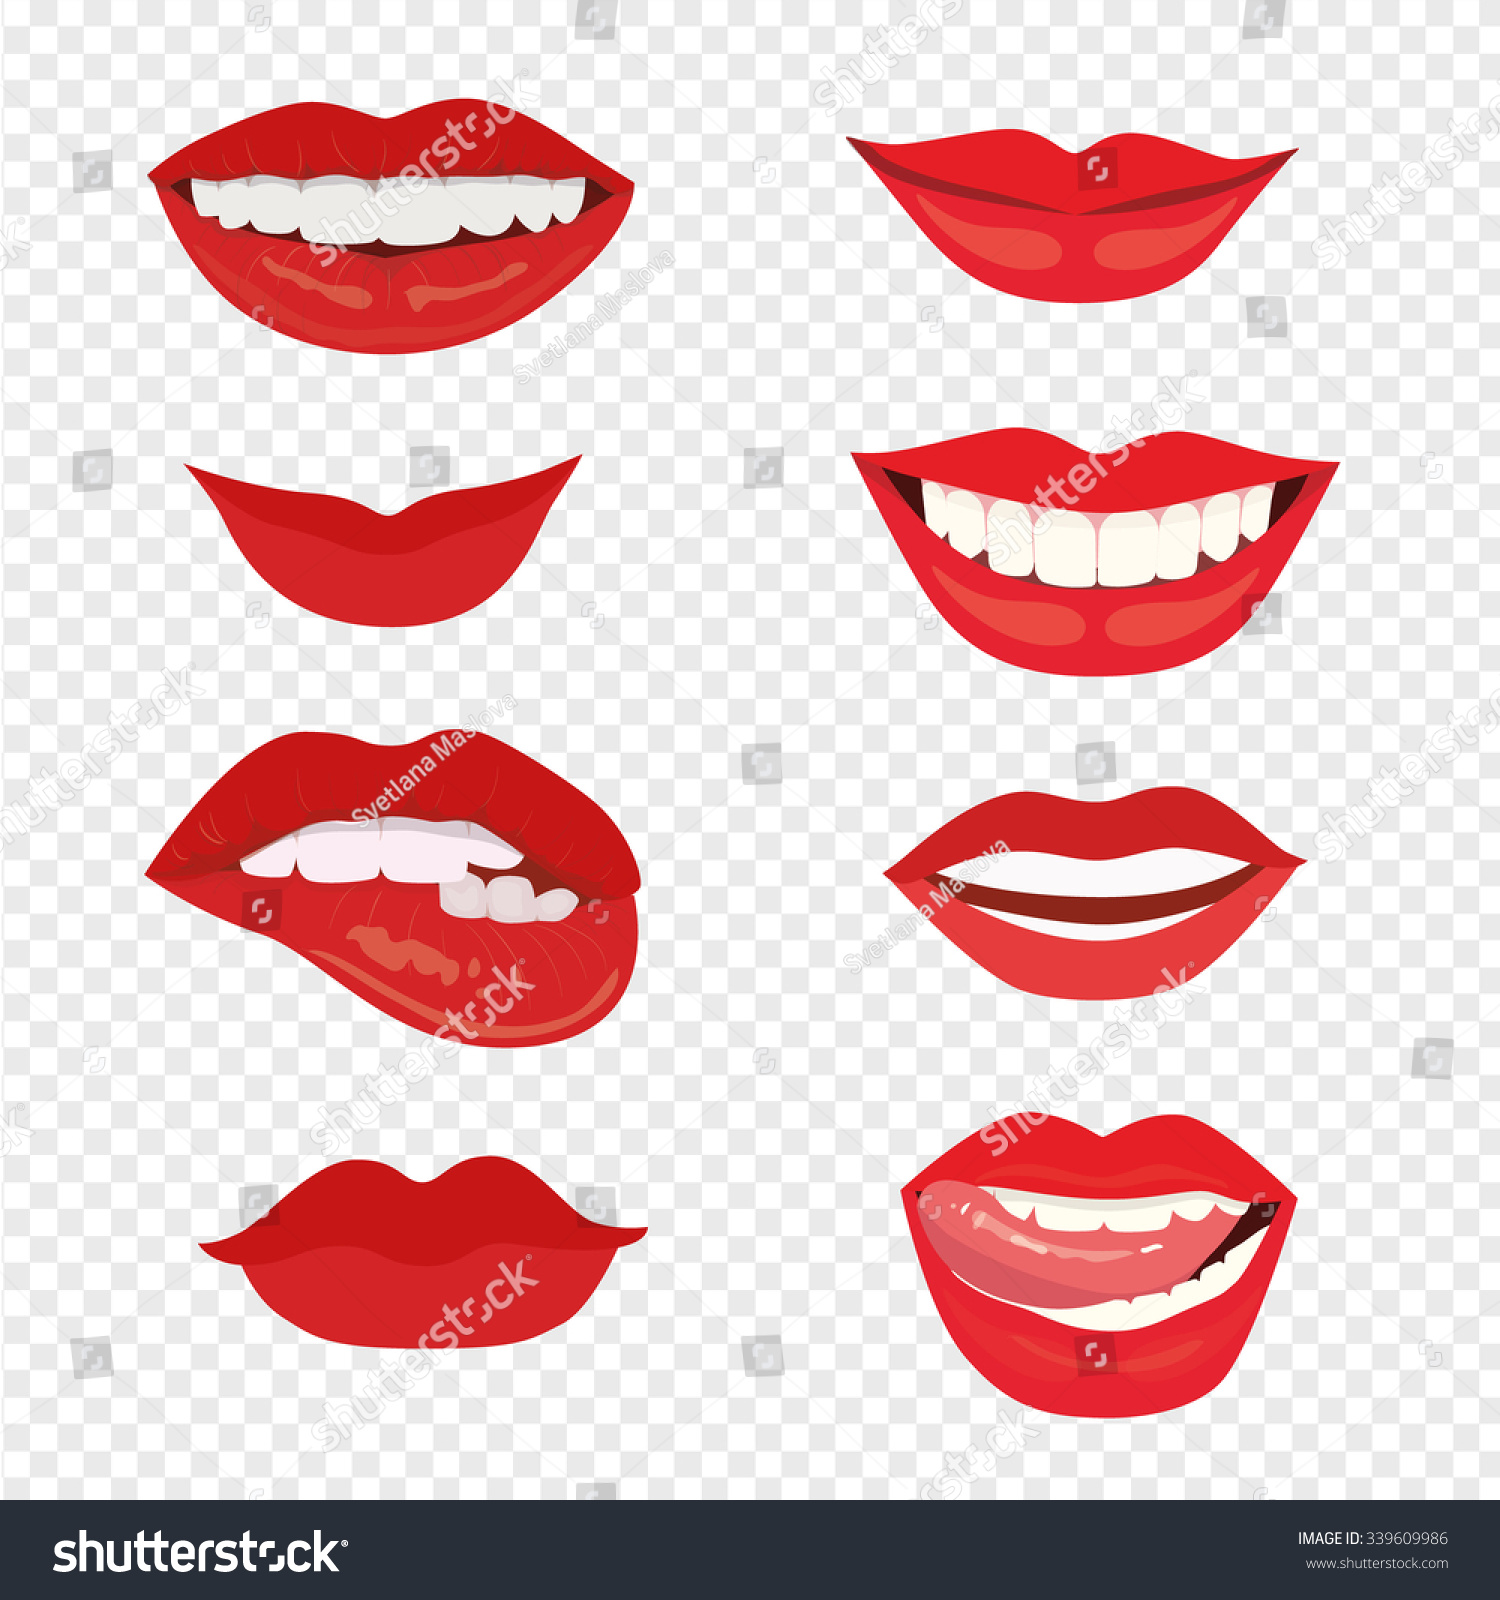 Female Lips Smile Mouth Kiss Vector Stock Vector 339609986 Shutterstock